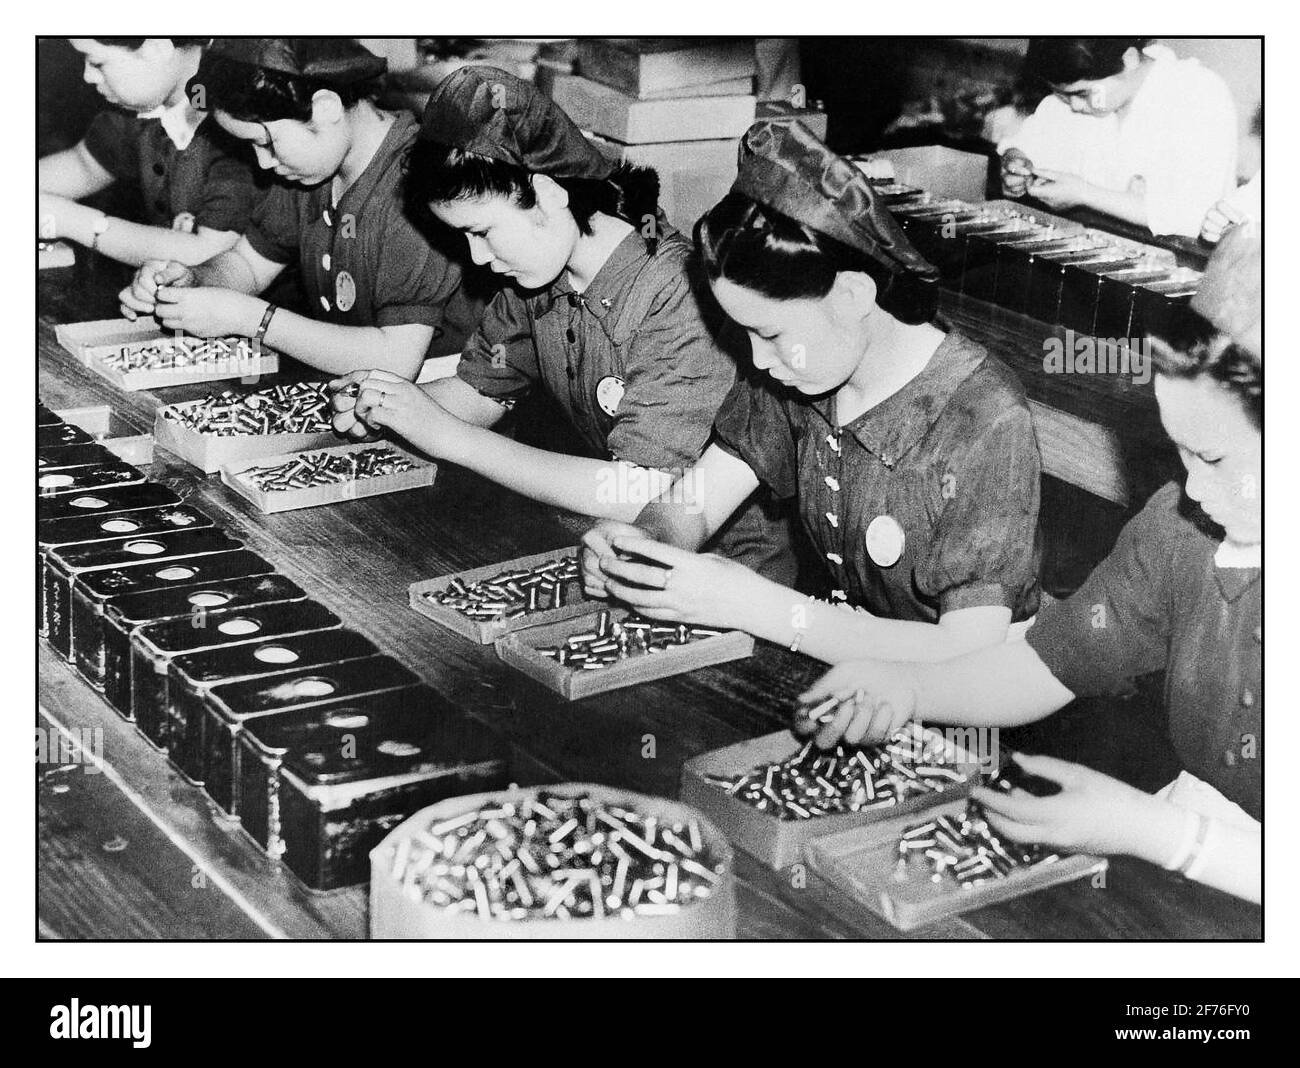 JAPAN WW2 FRAUEN KRIEGSARBEIT MUNITION RÜSTUNGEN 1941, JAPAN. WW2 Rüstungskriegsproduktion mit Frauen, die in einer japanischen Munitionsfabrik arbeiten. 2. Weltkrieg 2. Weltkrieg Stockfoto